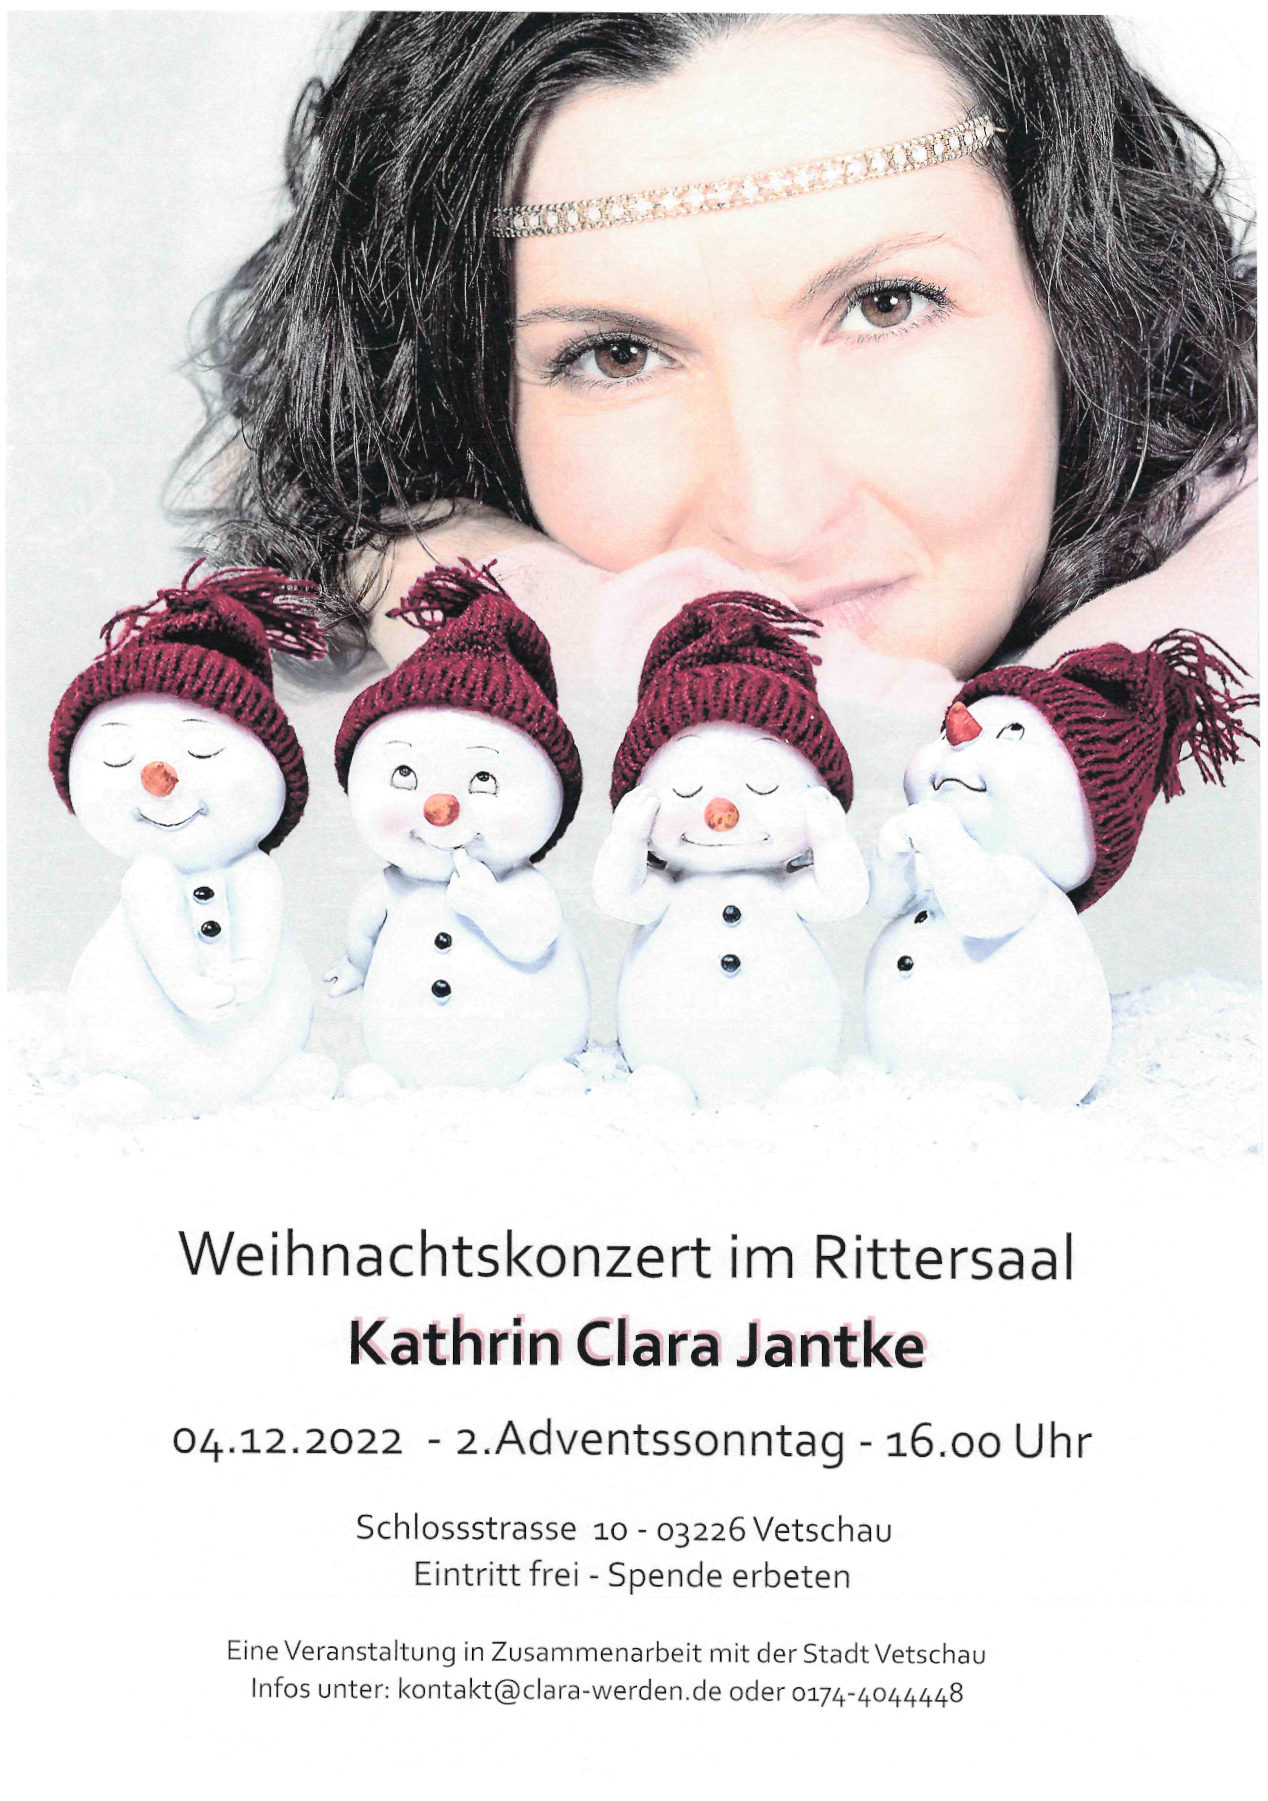 Kathrin Clara Jantke - Weihnachtskonzert